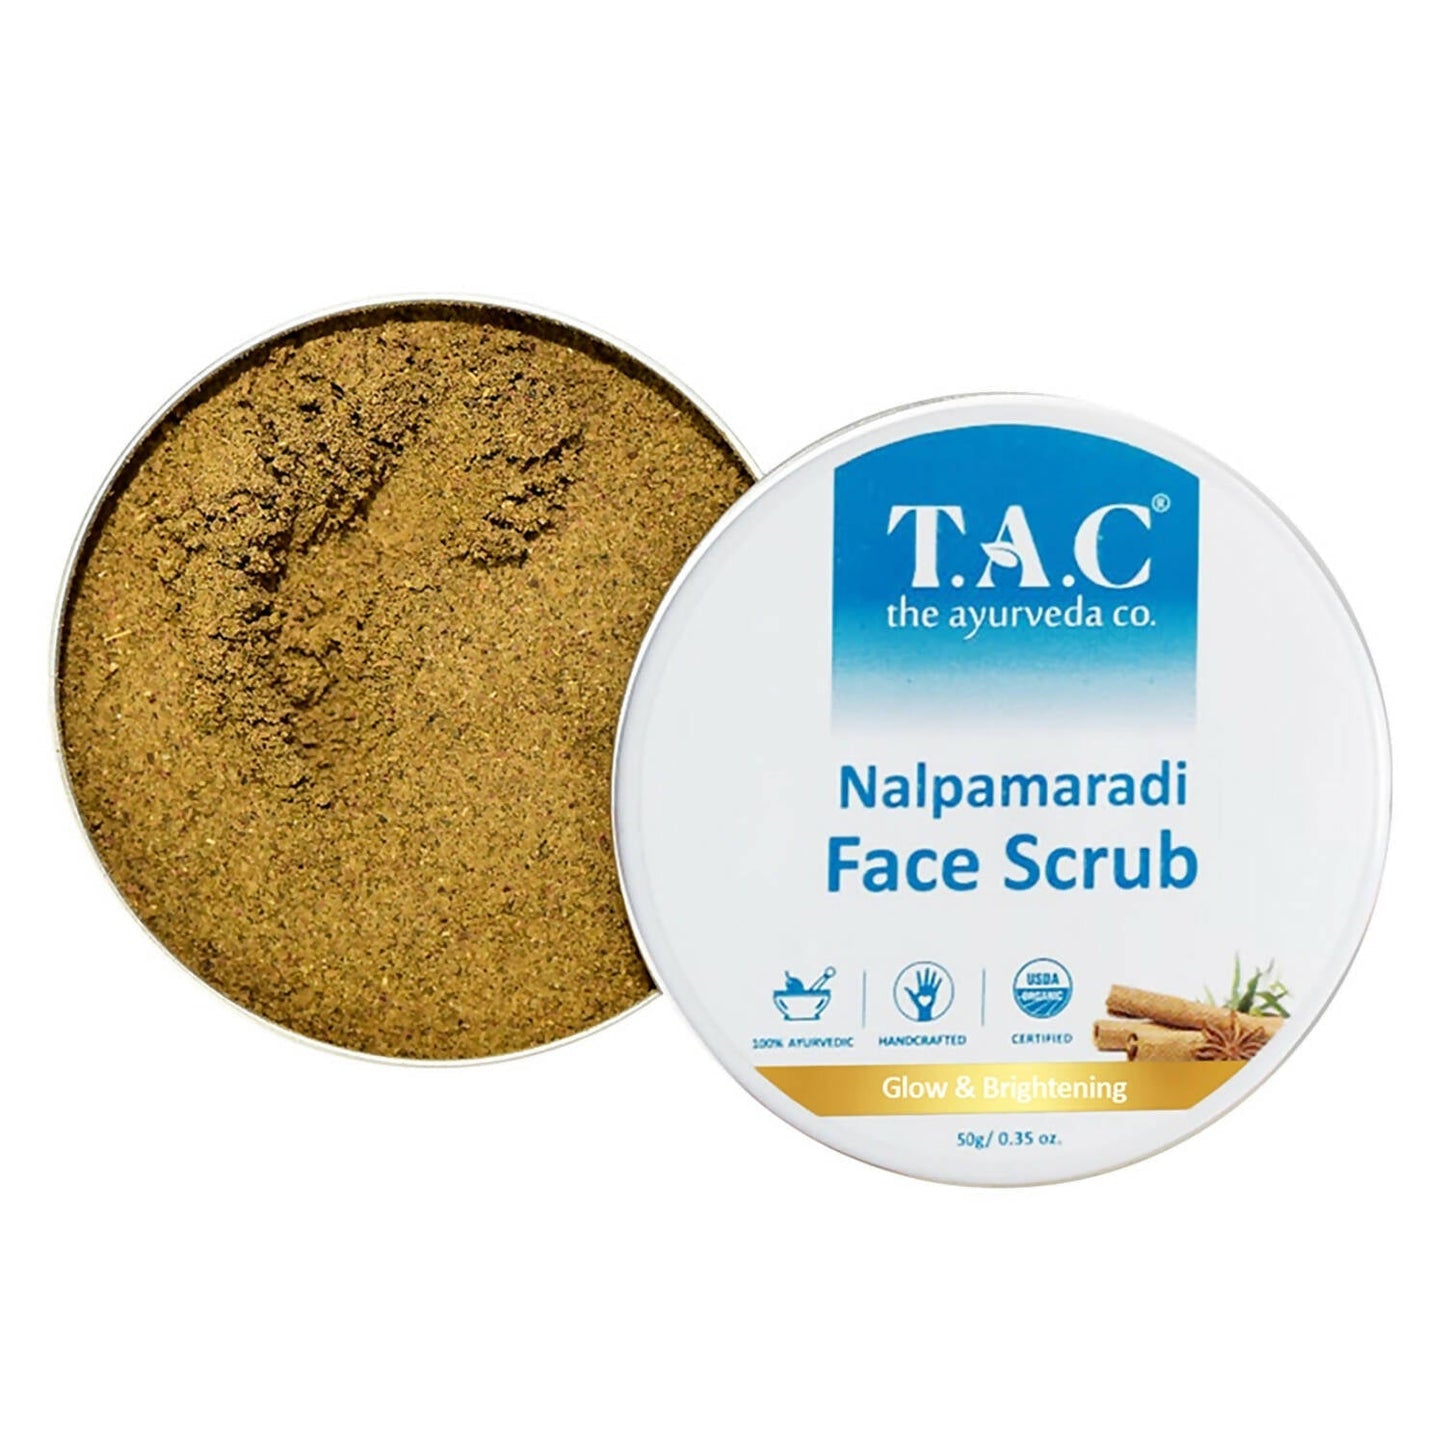 TAC - The Ayurveda Co. Nalpamaradi Face Scrub for Glowing & Brightening Skin with Triphala Powder for Women & Men - BUDEN